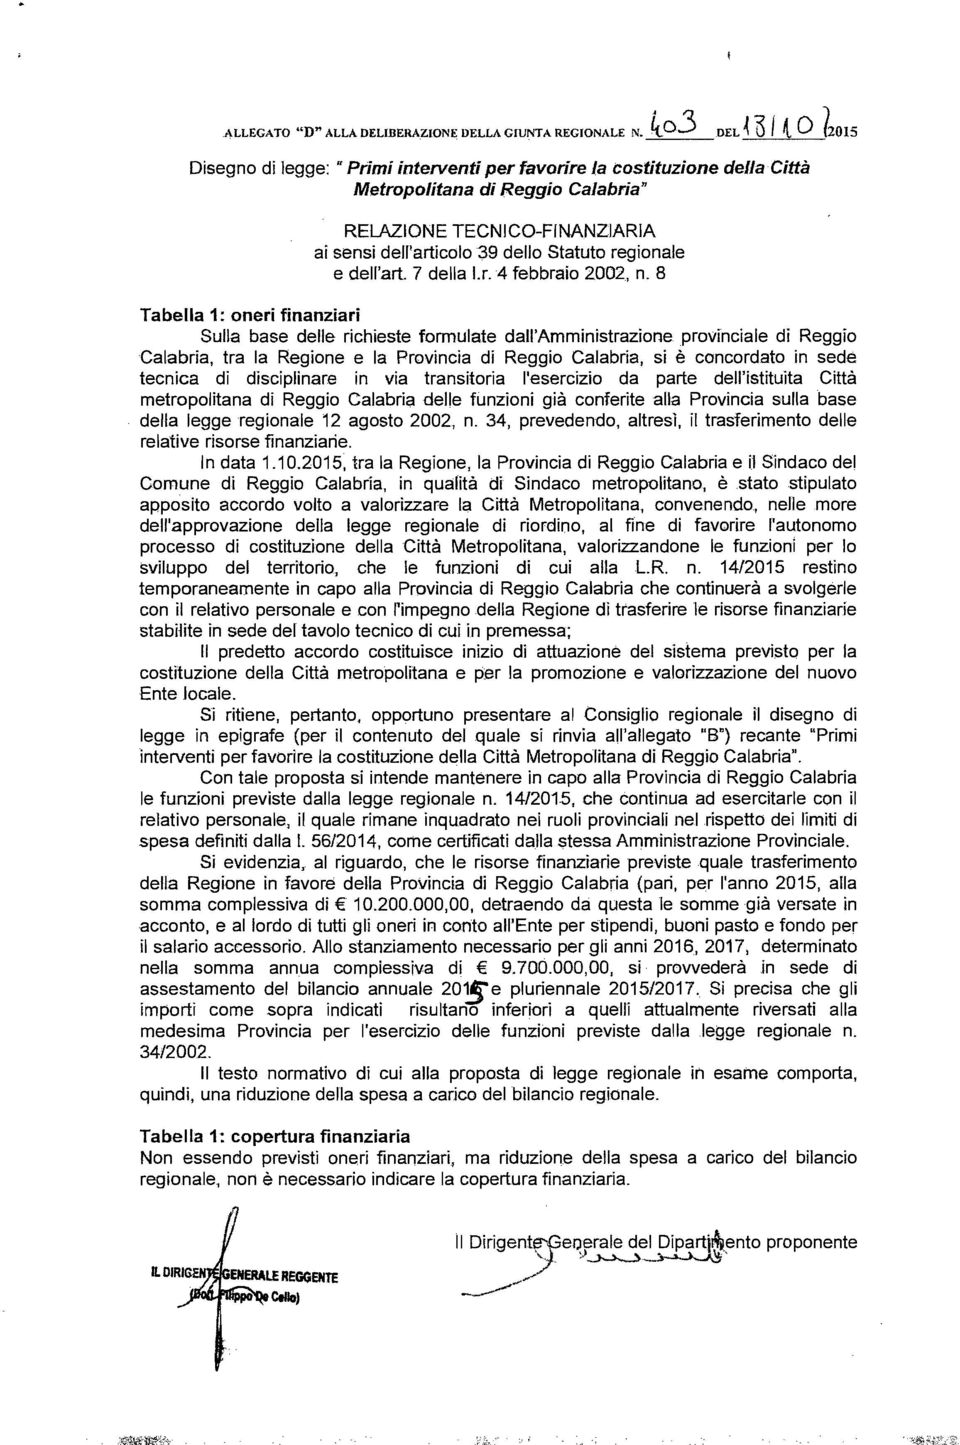 Statuto regionale e dell'art 7 della 1.r.4 febbraio 2002, n.